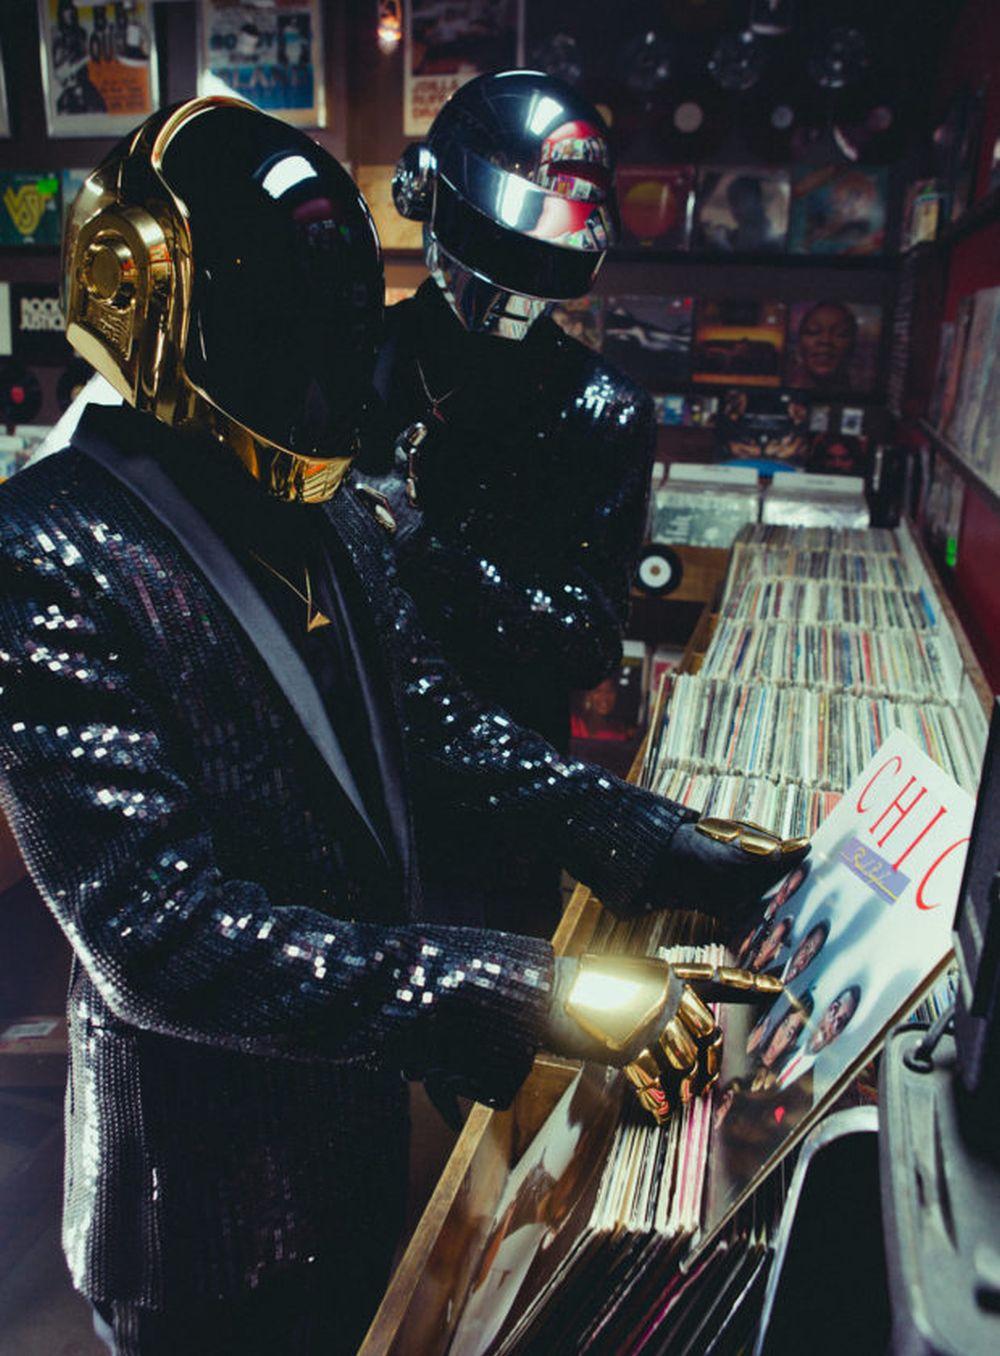 Kraj Daft Punka: Kacige su skinute, a odijela raskopčana